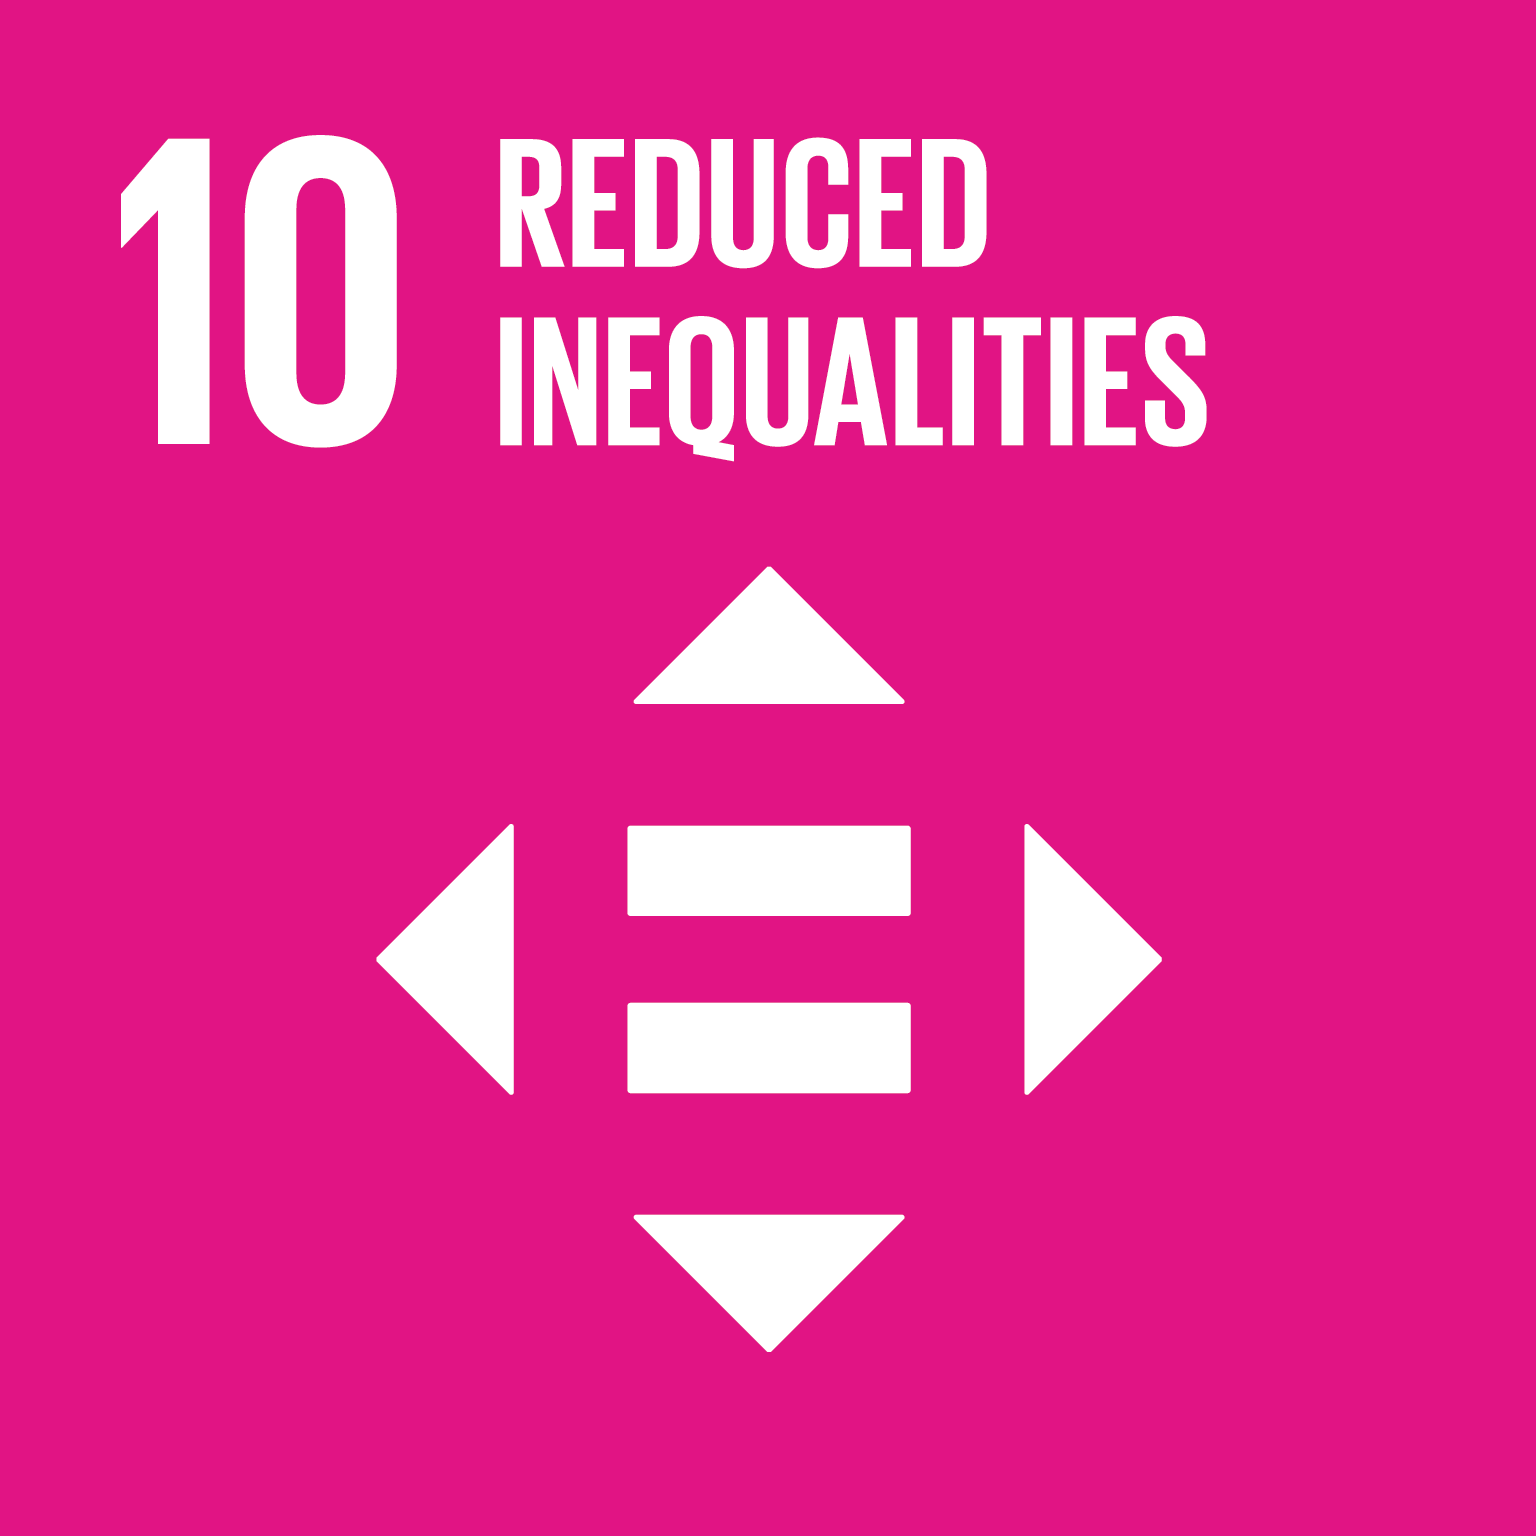 UN SDG #10